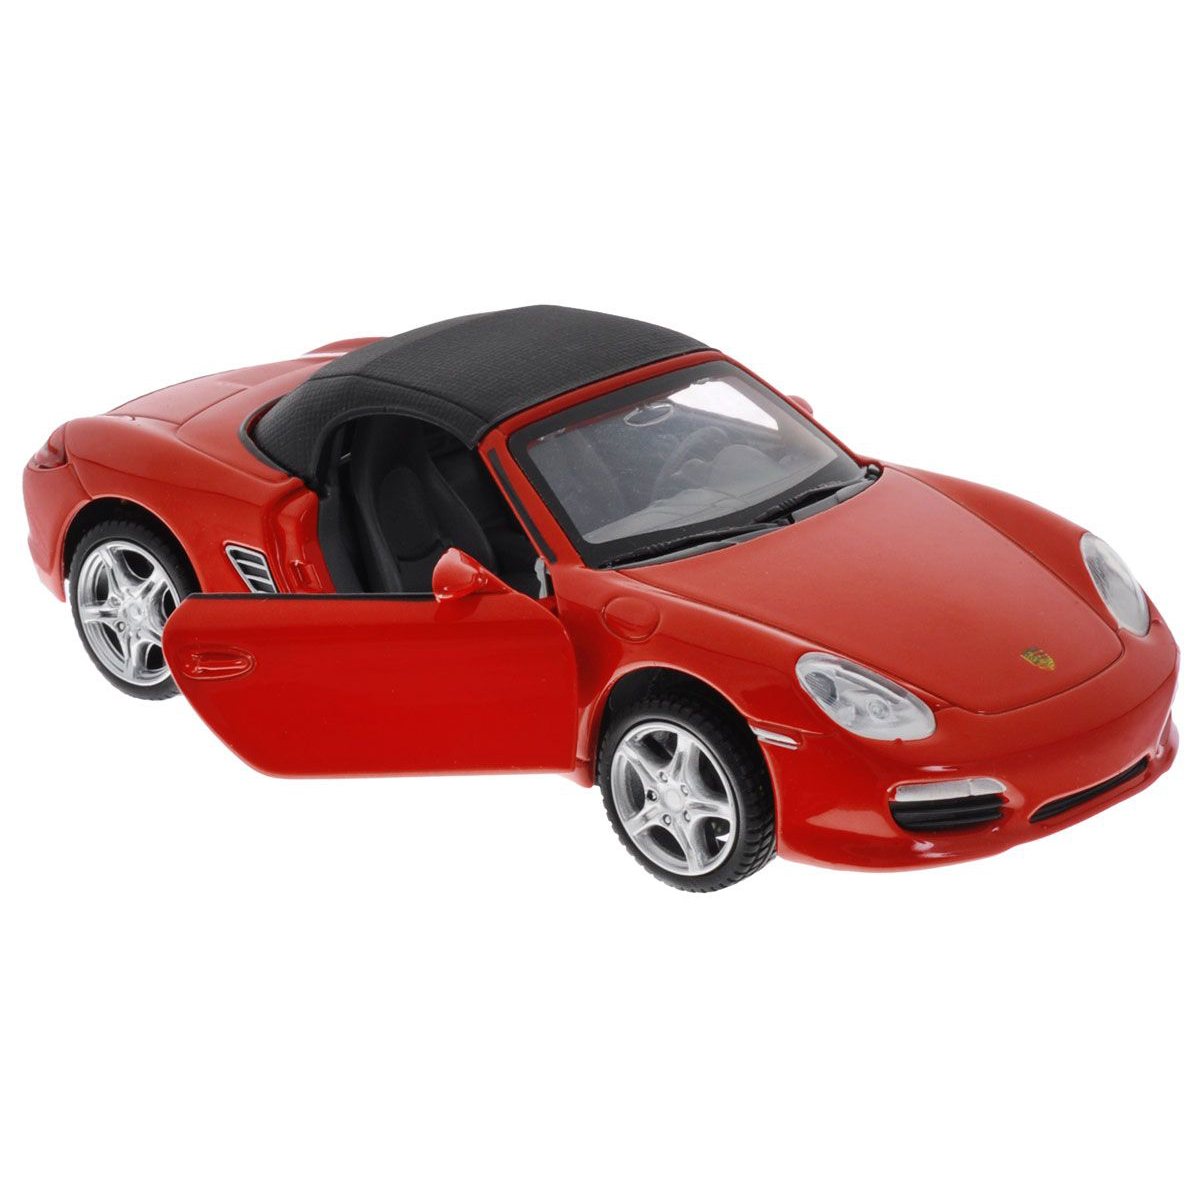 Toy машина. Машина "Porsche Boxster s" Kinsmart,. Порше Бокстер 1 32 Велли. Машинка Porsche Boxter Spider 1:32. Porsche Boxster игрушка.